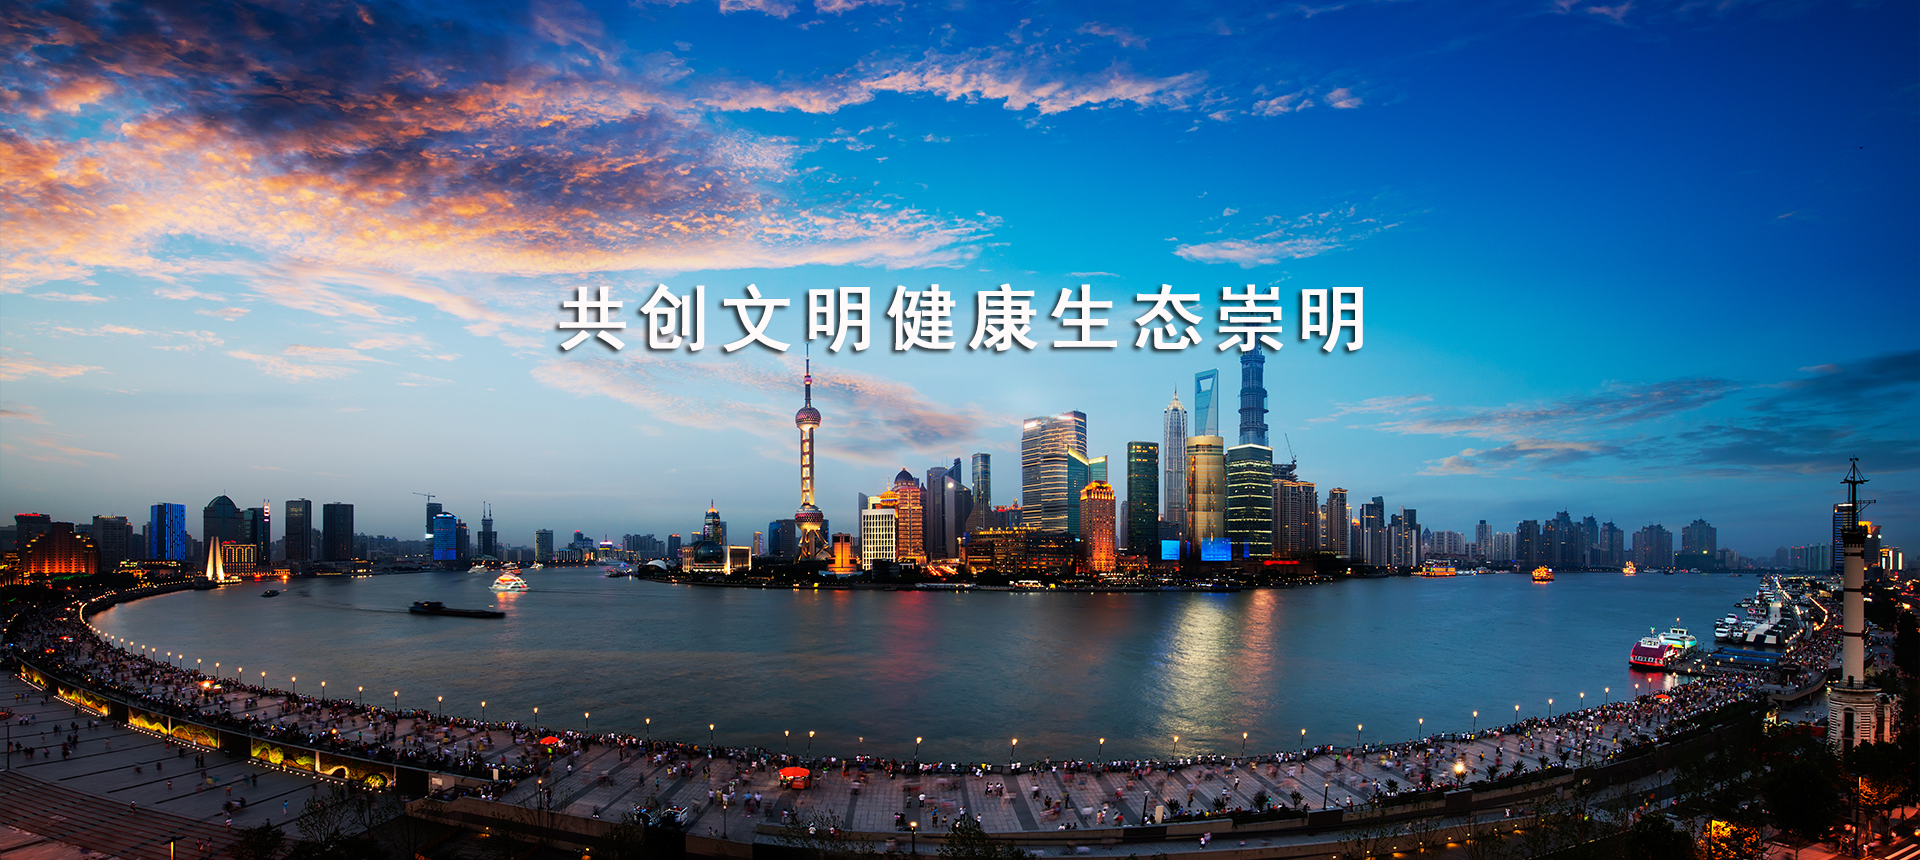 上海崇明区招商政策网